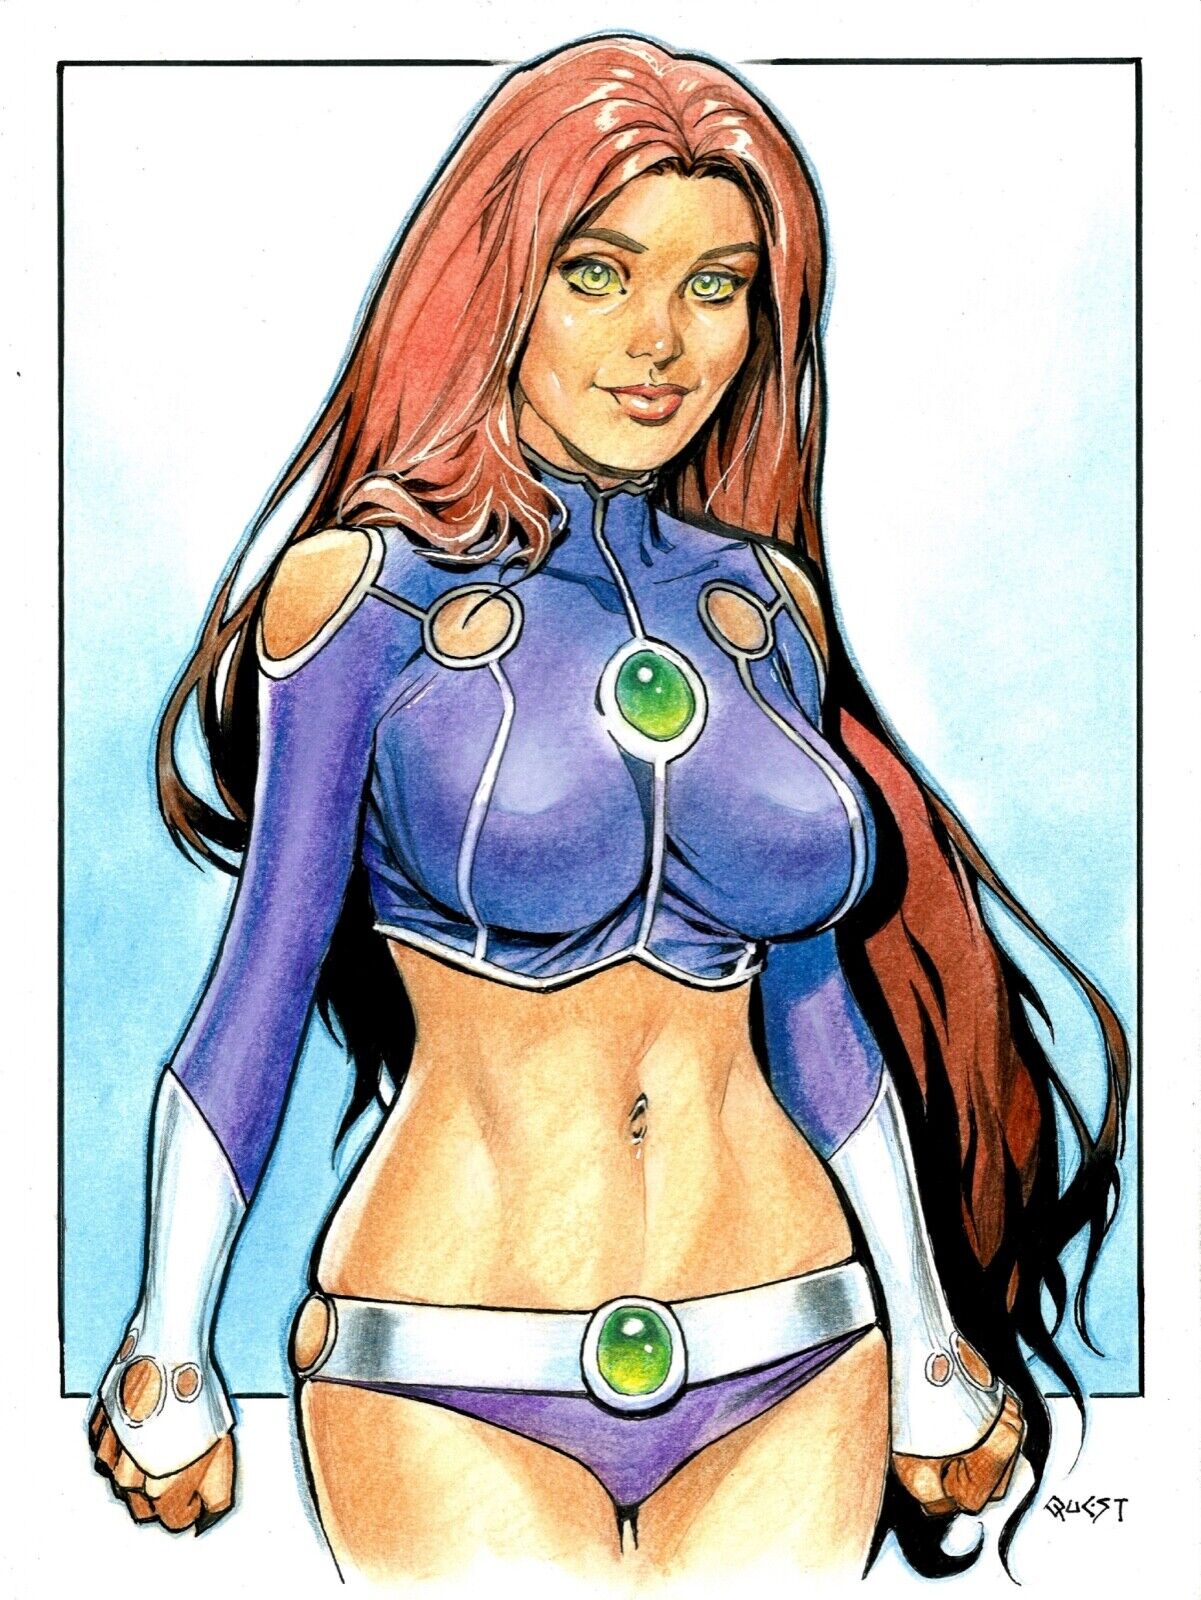 QUEST STARFIRE Original Art Sketch Illustration Teen Titans Color